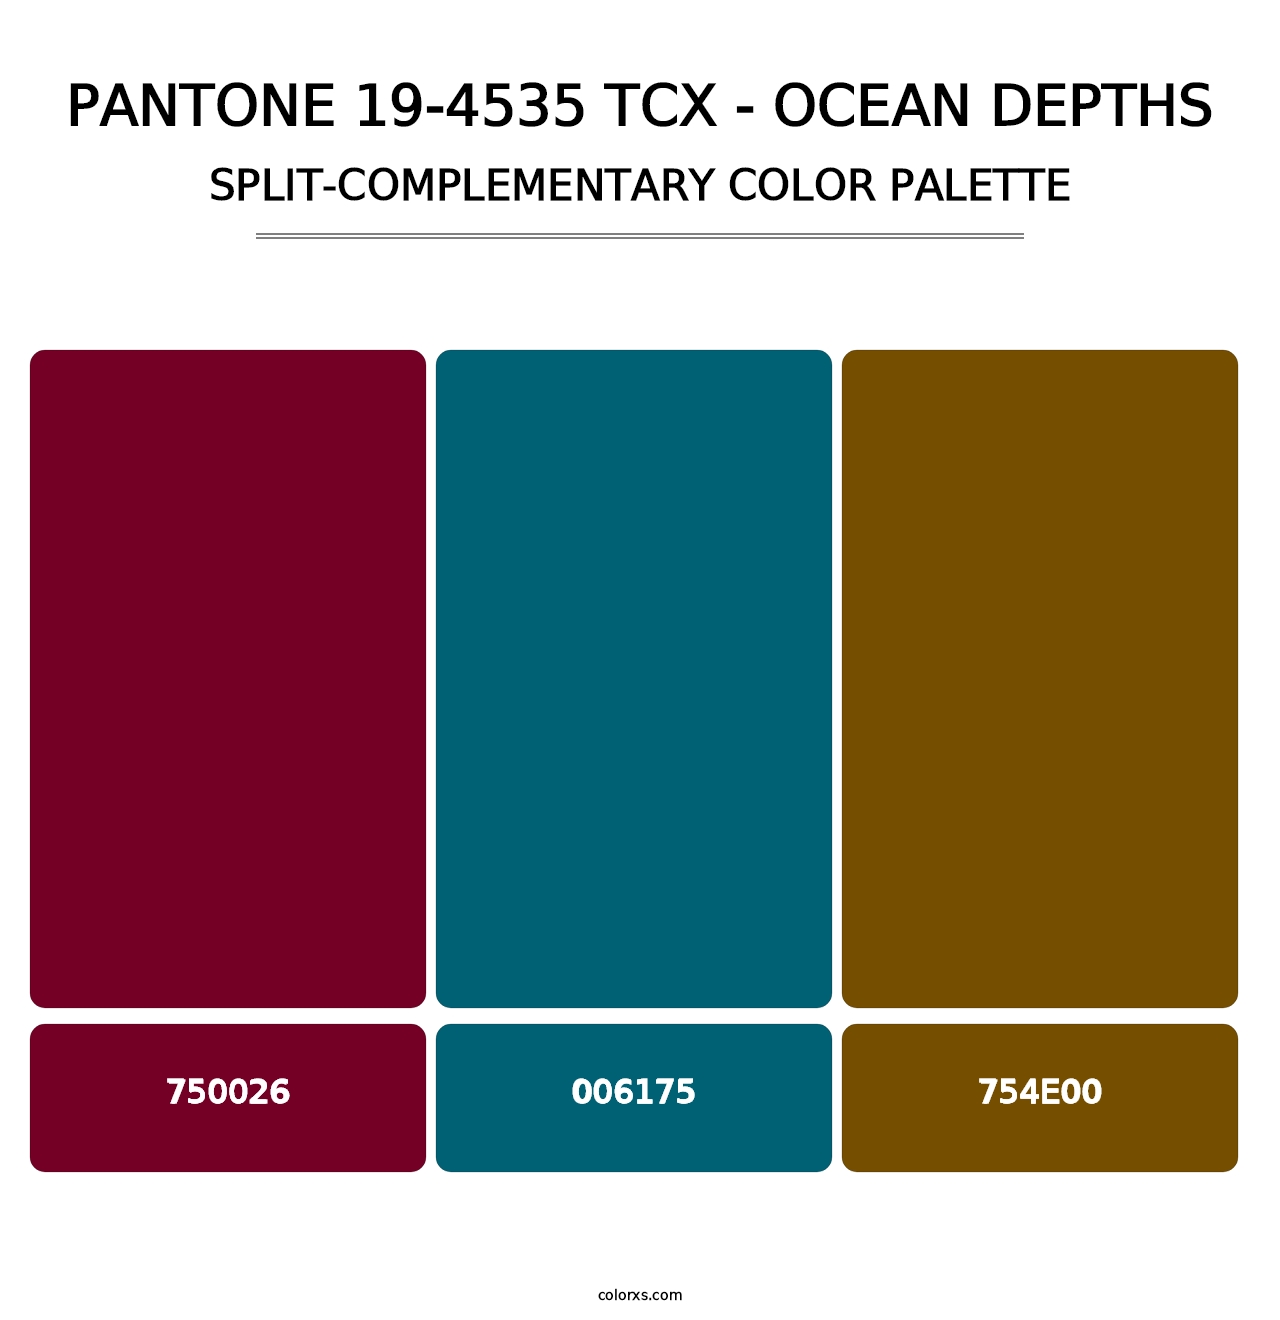 PANTONE 19-4535 TCX - Ocean Depths - Split-Complementary Color Palette